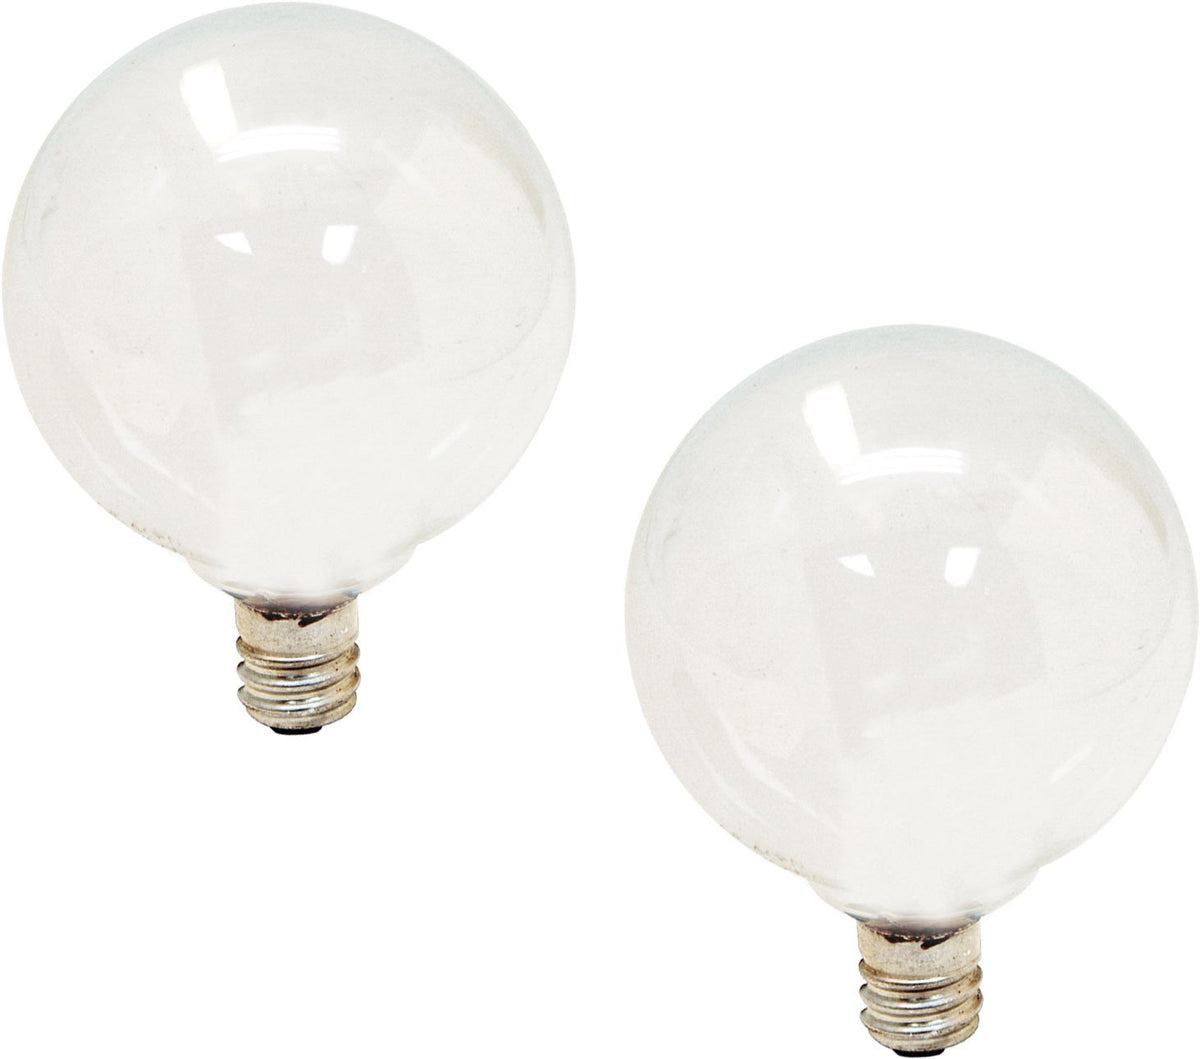 GE Lighting 44414 Candelabra Base G16.5 Globe Light Bulb, Soft White, 40W, 2-Pack